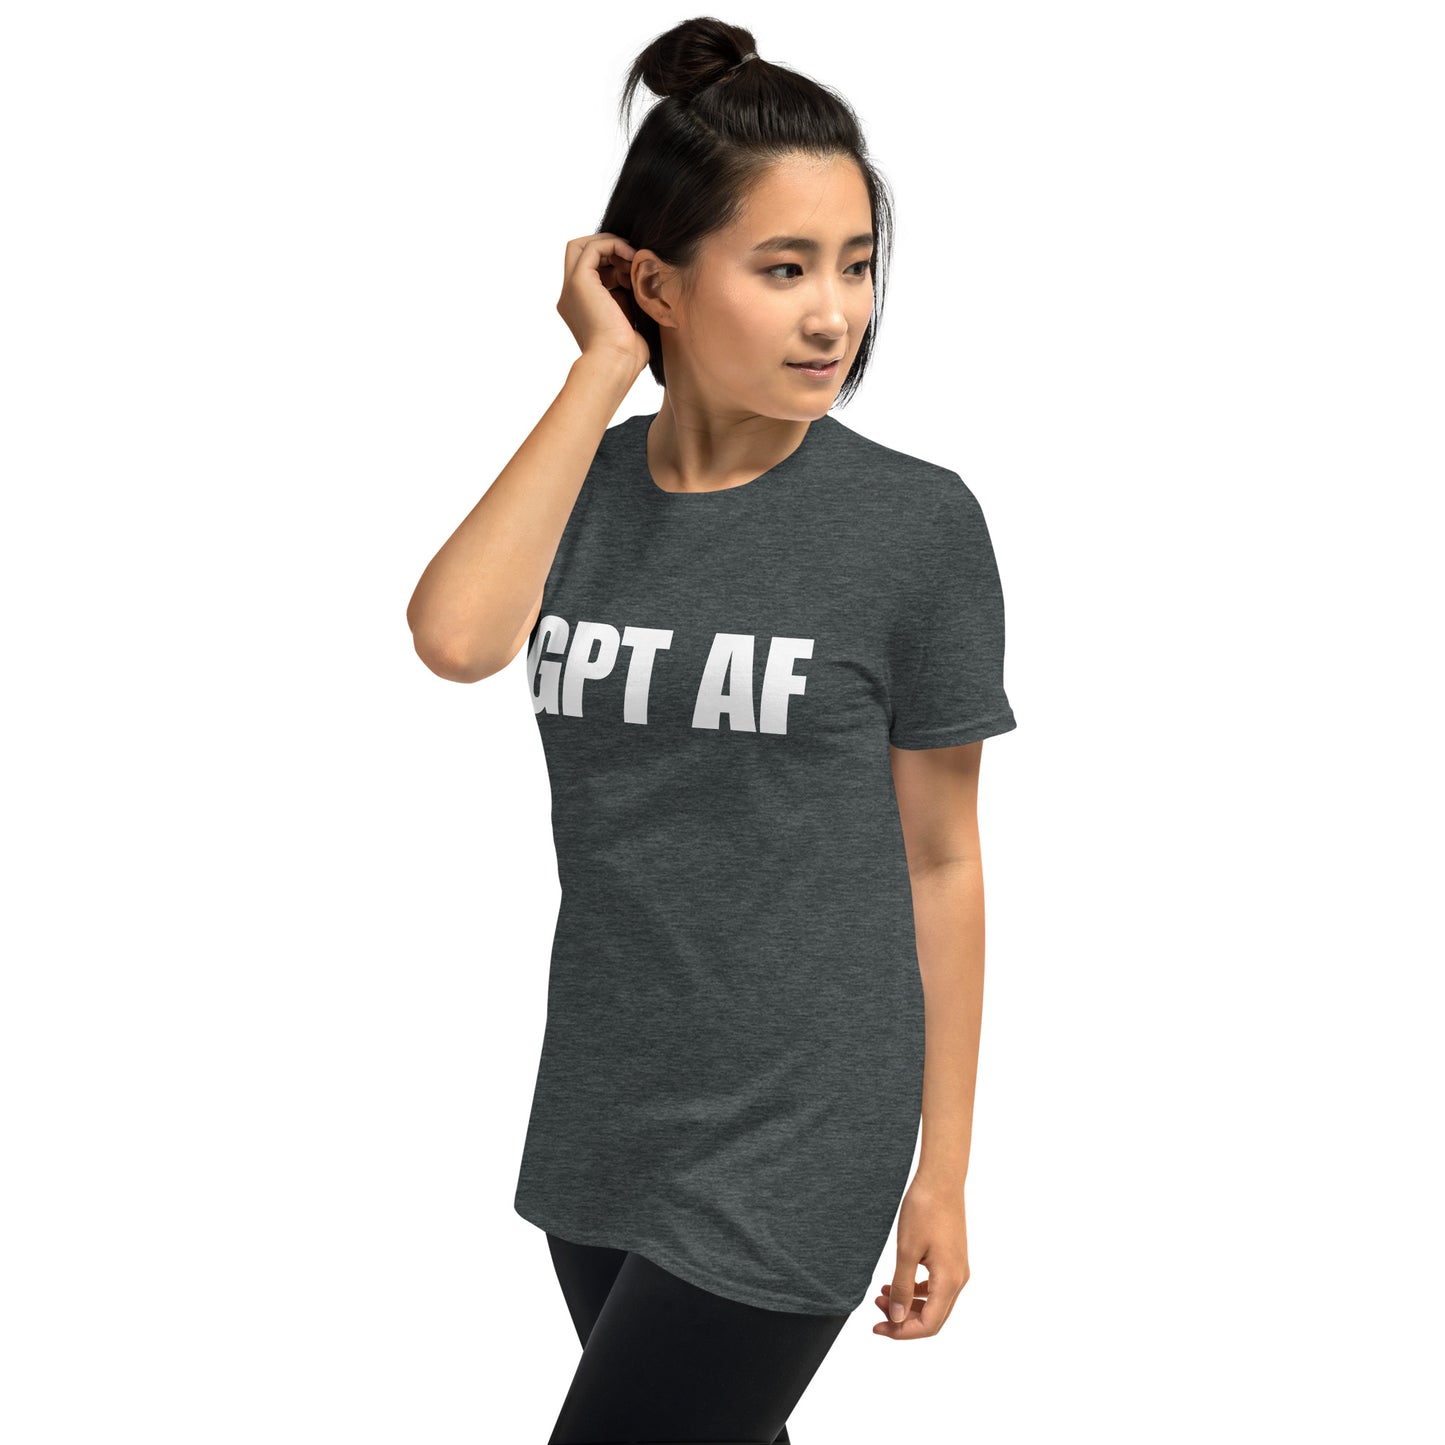 GPT AF - Short-Sleeve Unisex T-Shirt